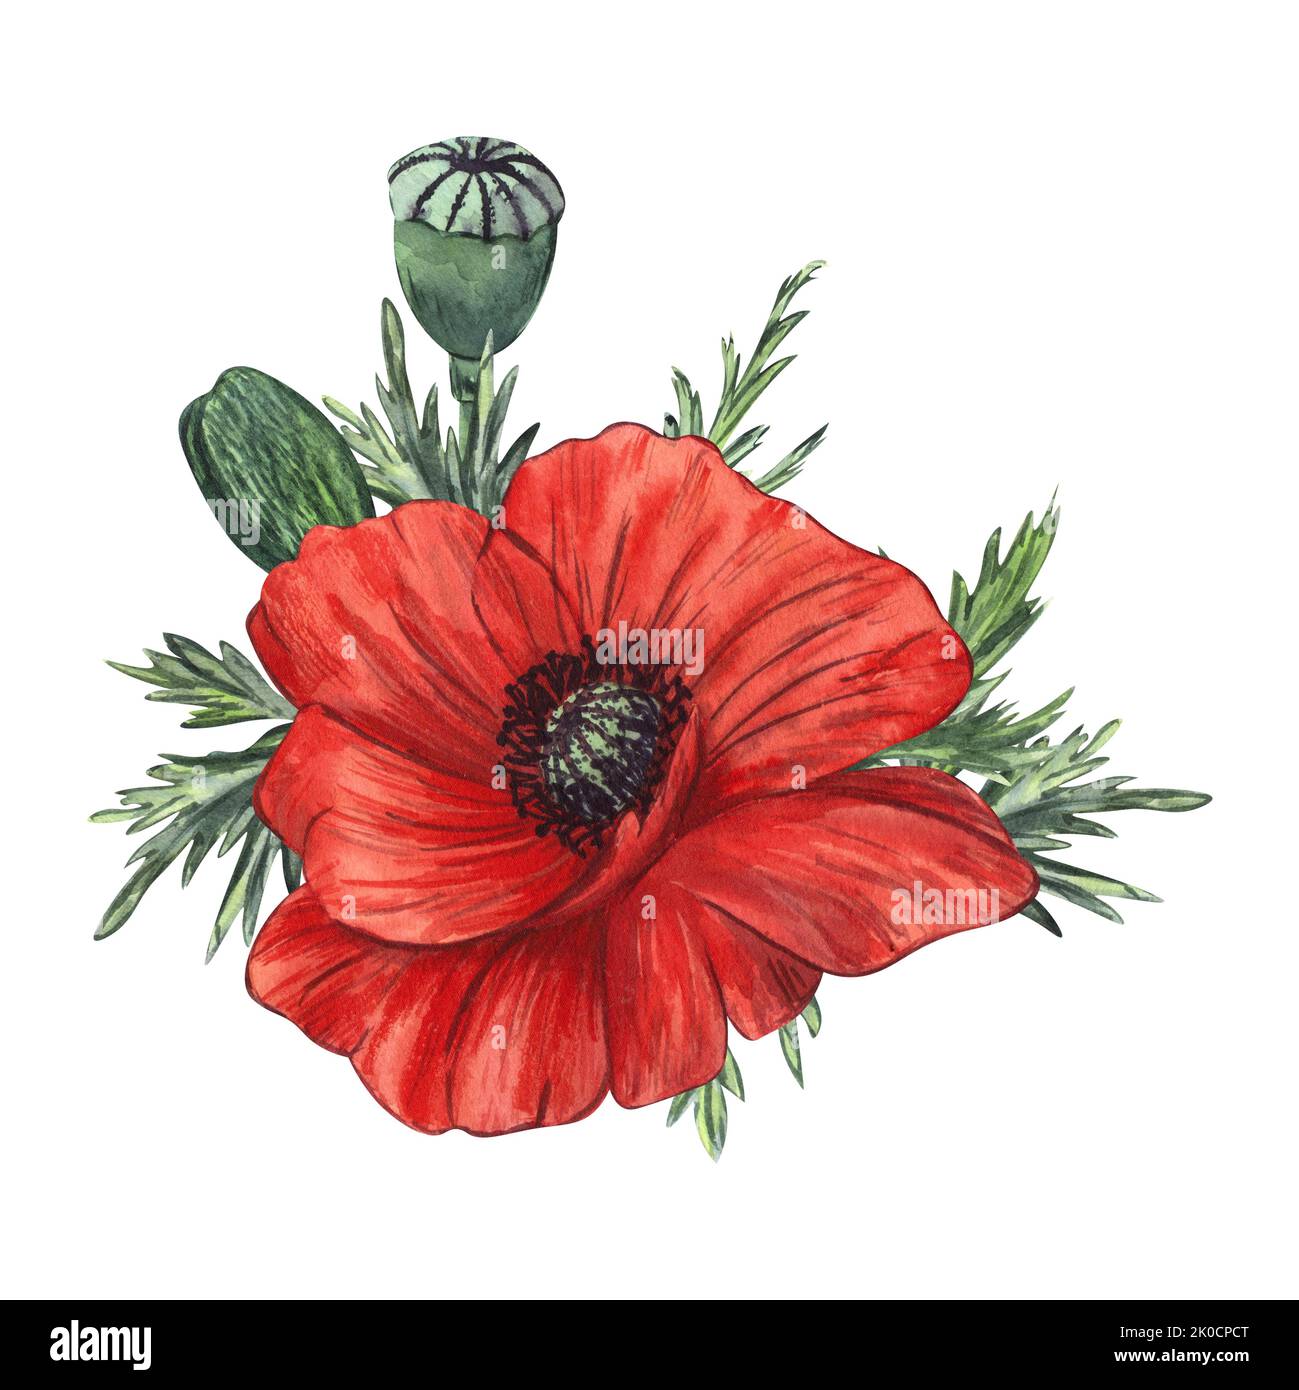 Composition de fleurs et de bourgeons de pavot rouge peints en aquarelle, isolés sur fond blanc. Pour le design, les invitations, l'emballage, les cartes postales Banque D'Images